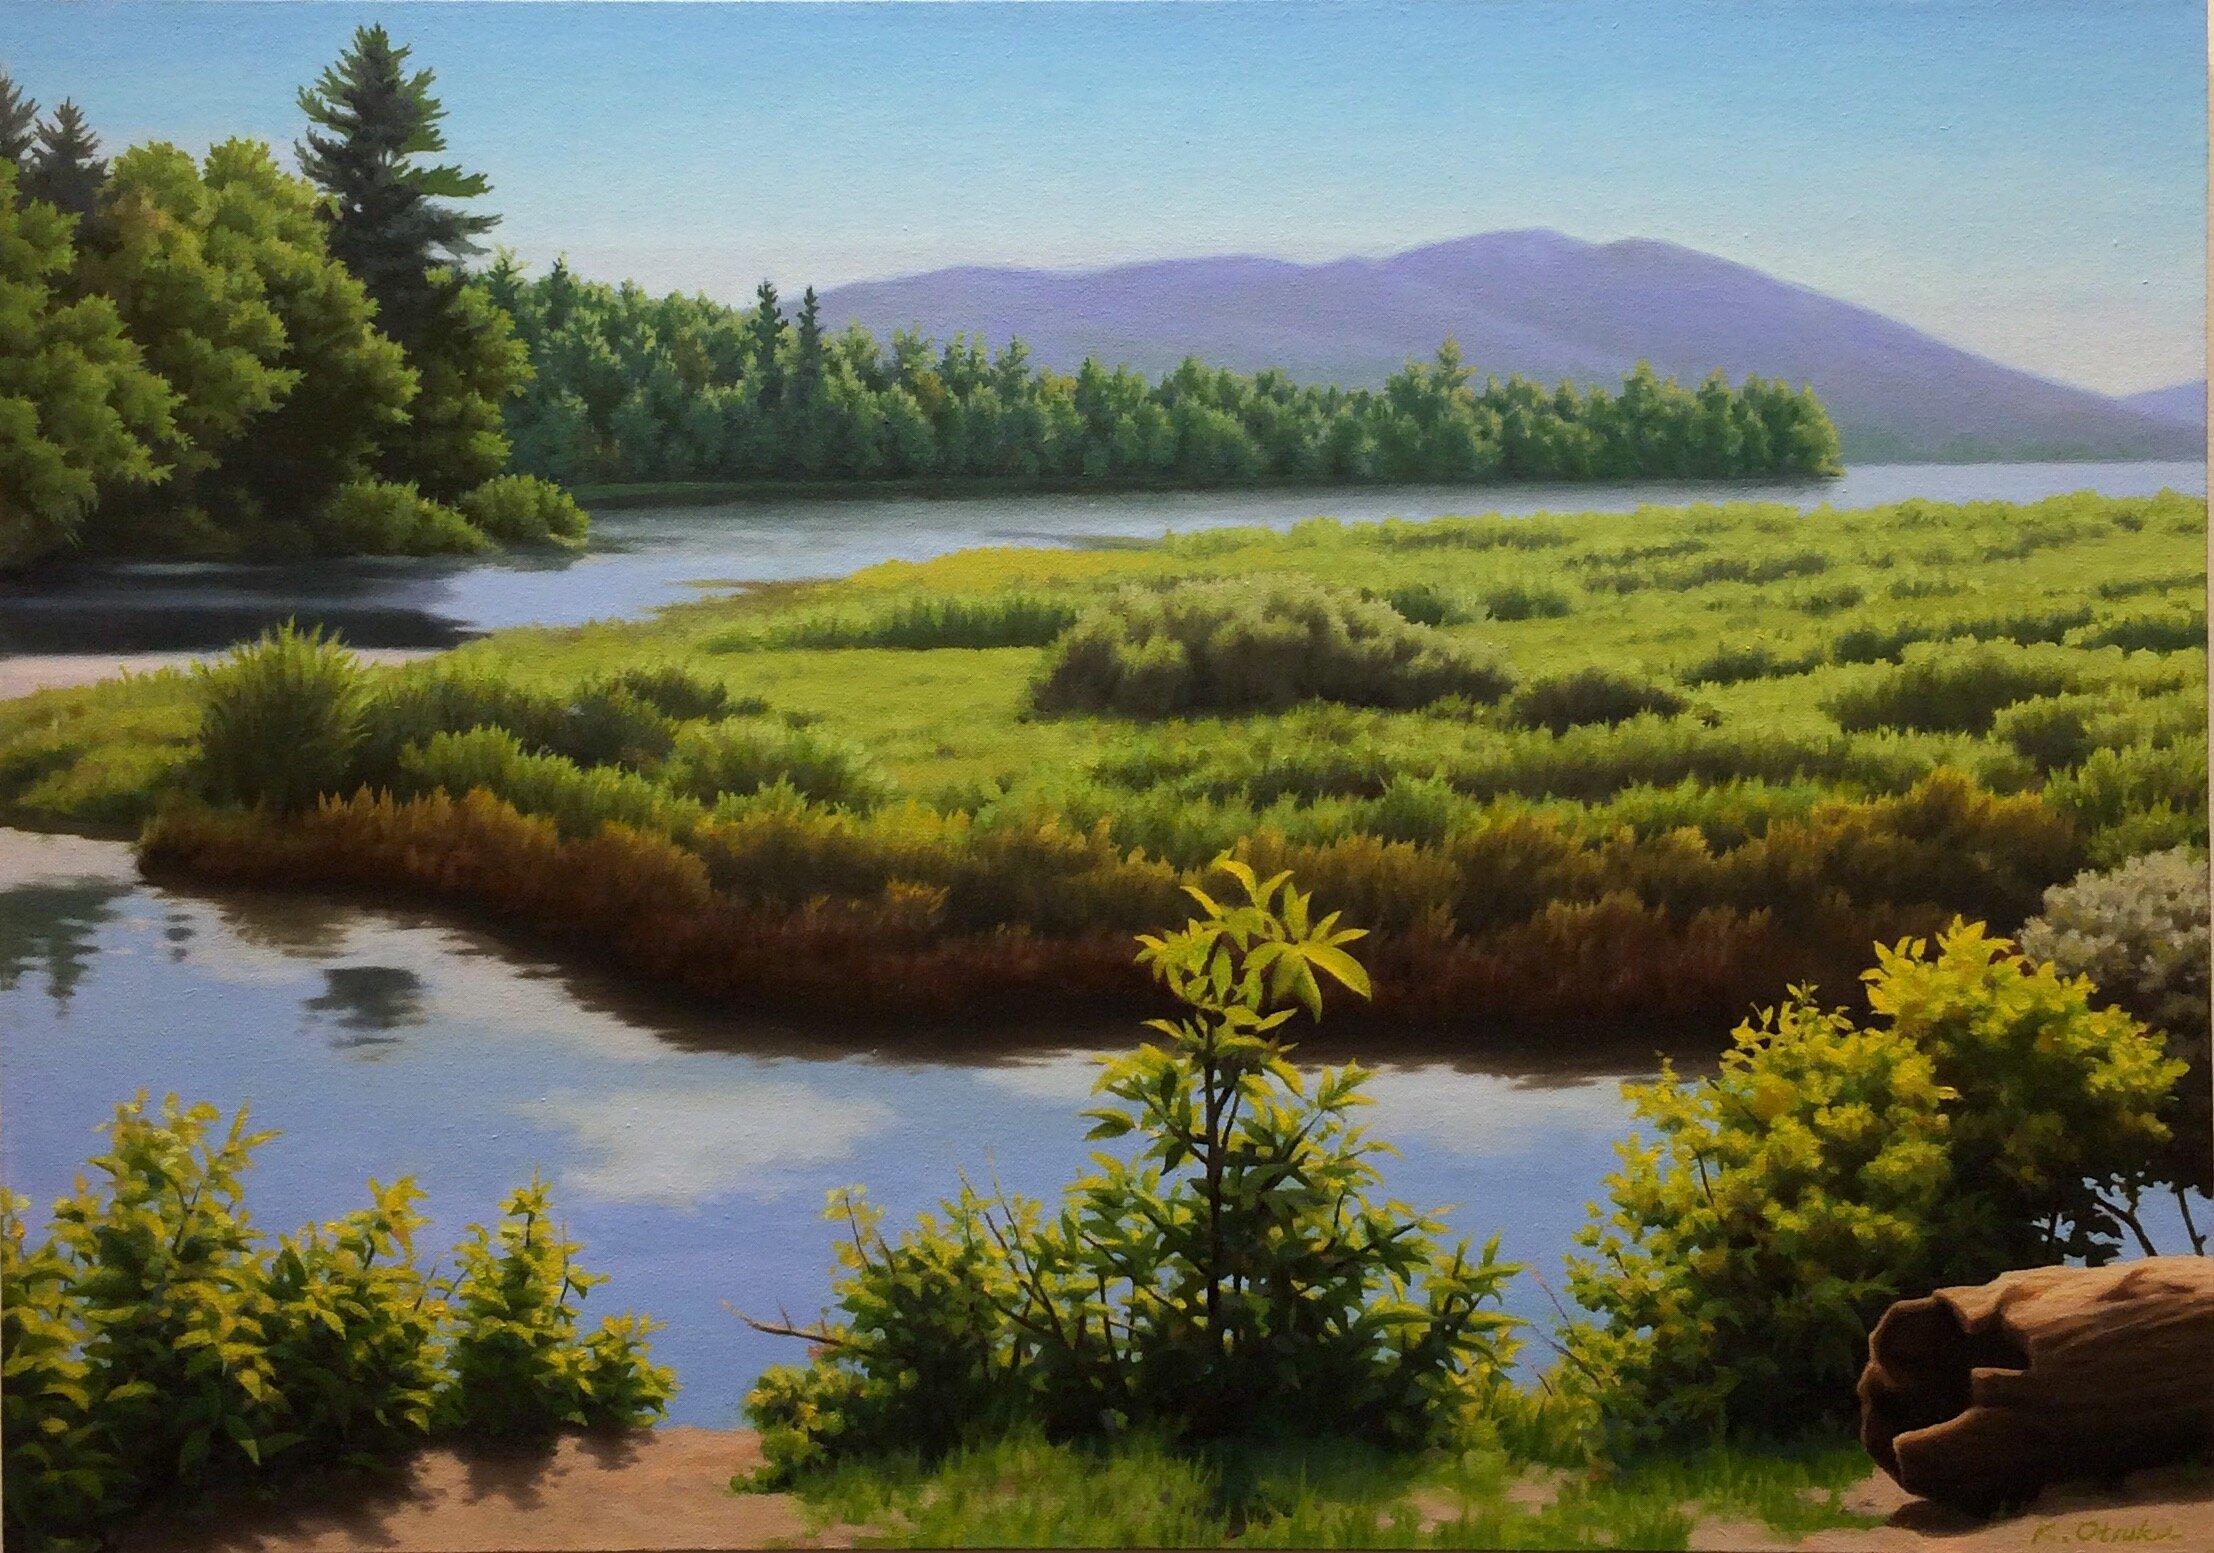 Dieses Werk, "Lewey Lake", ist ein 24x34 großes Ölgemälde auf Leinwand des Künstlers Ken Otsuka. Sie sehen einen ruhigen Sommerblick auf ein stilles Gewässer mit üppigem Grün an den Rändern des Sees. Durch die warme, dunstige Luft ist ein Bergkamm